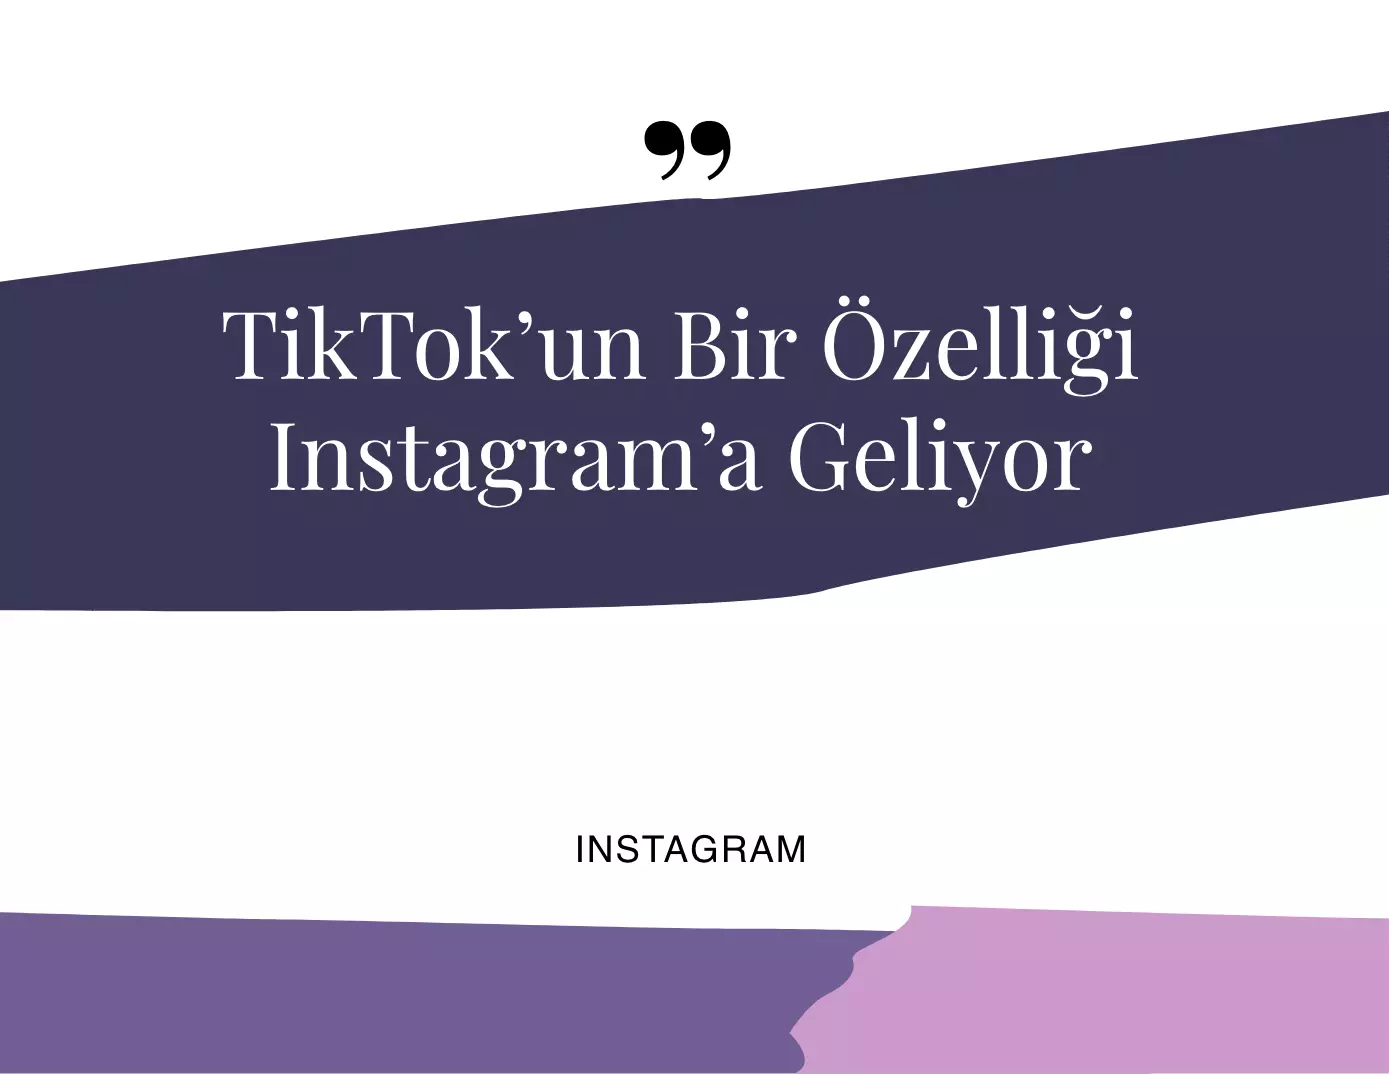 TikTok'un Bir Özelliği Instagram'a Geliyor